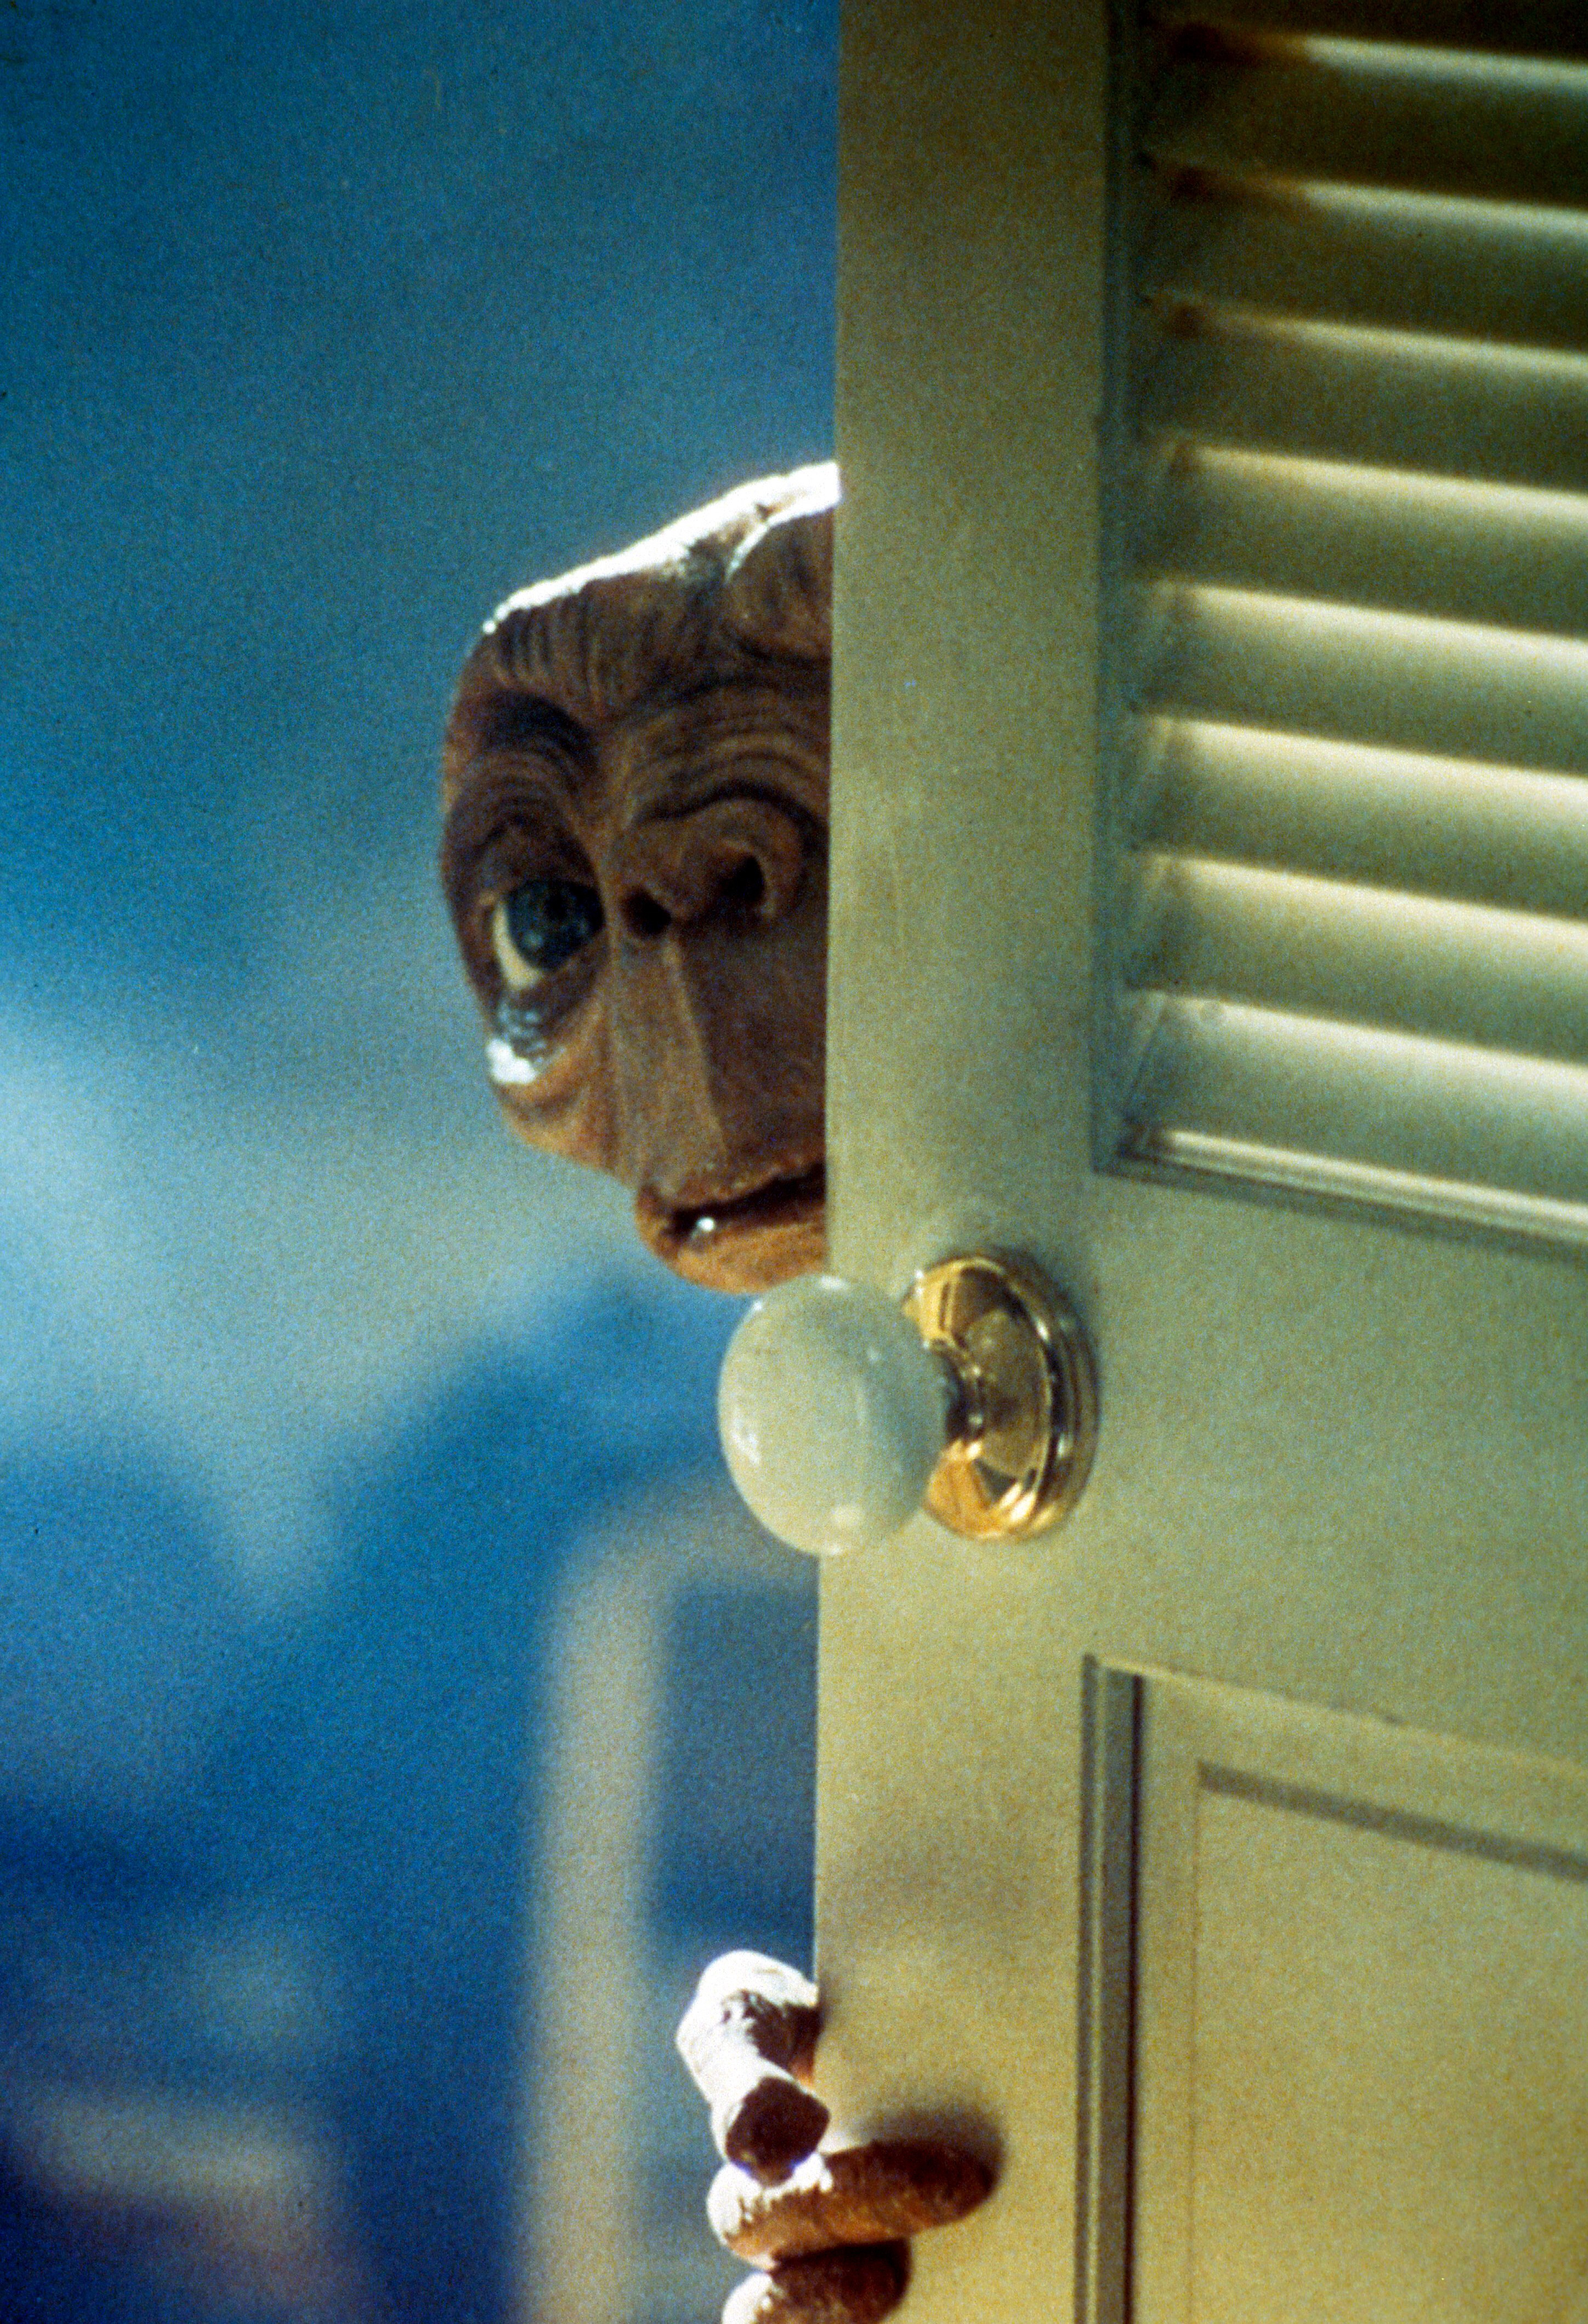 ET mirando alrededor de la puerta en una escena de la película 'E.T. El extraterrestre', 1982. (Photo by Universal/Getty Images)